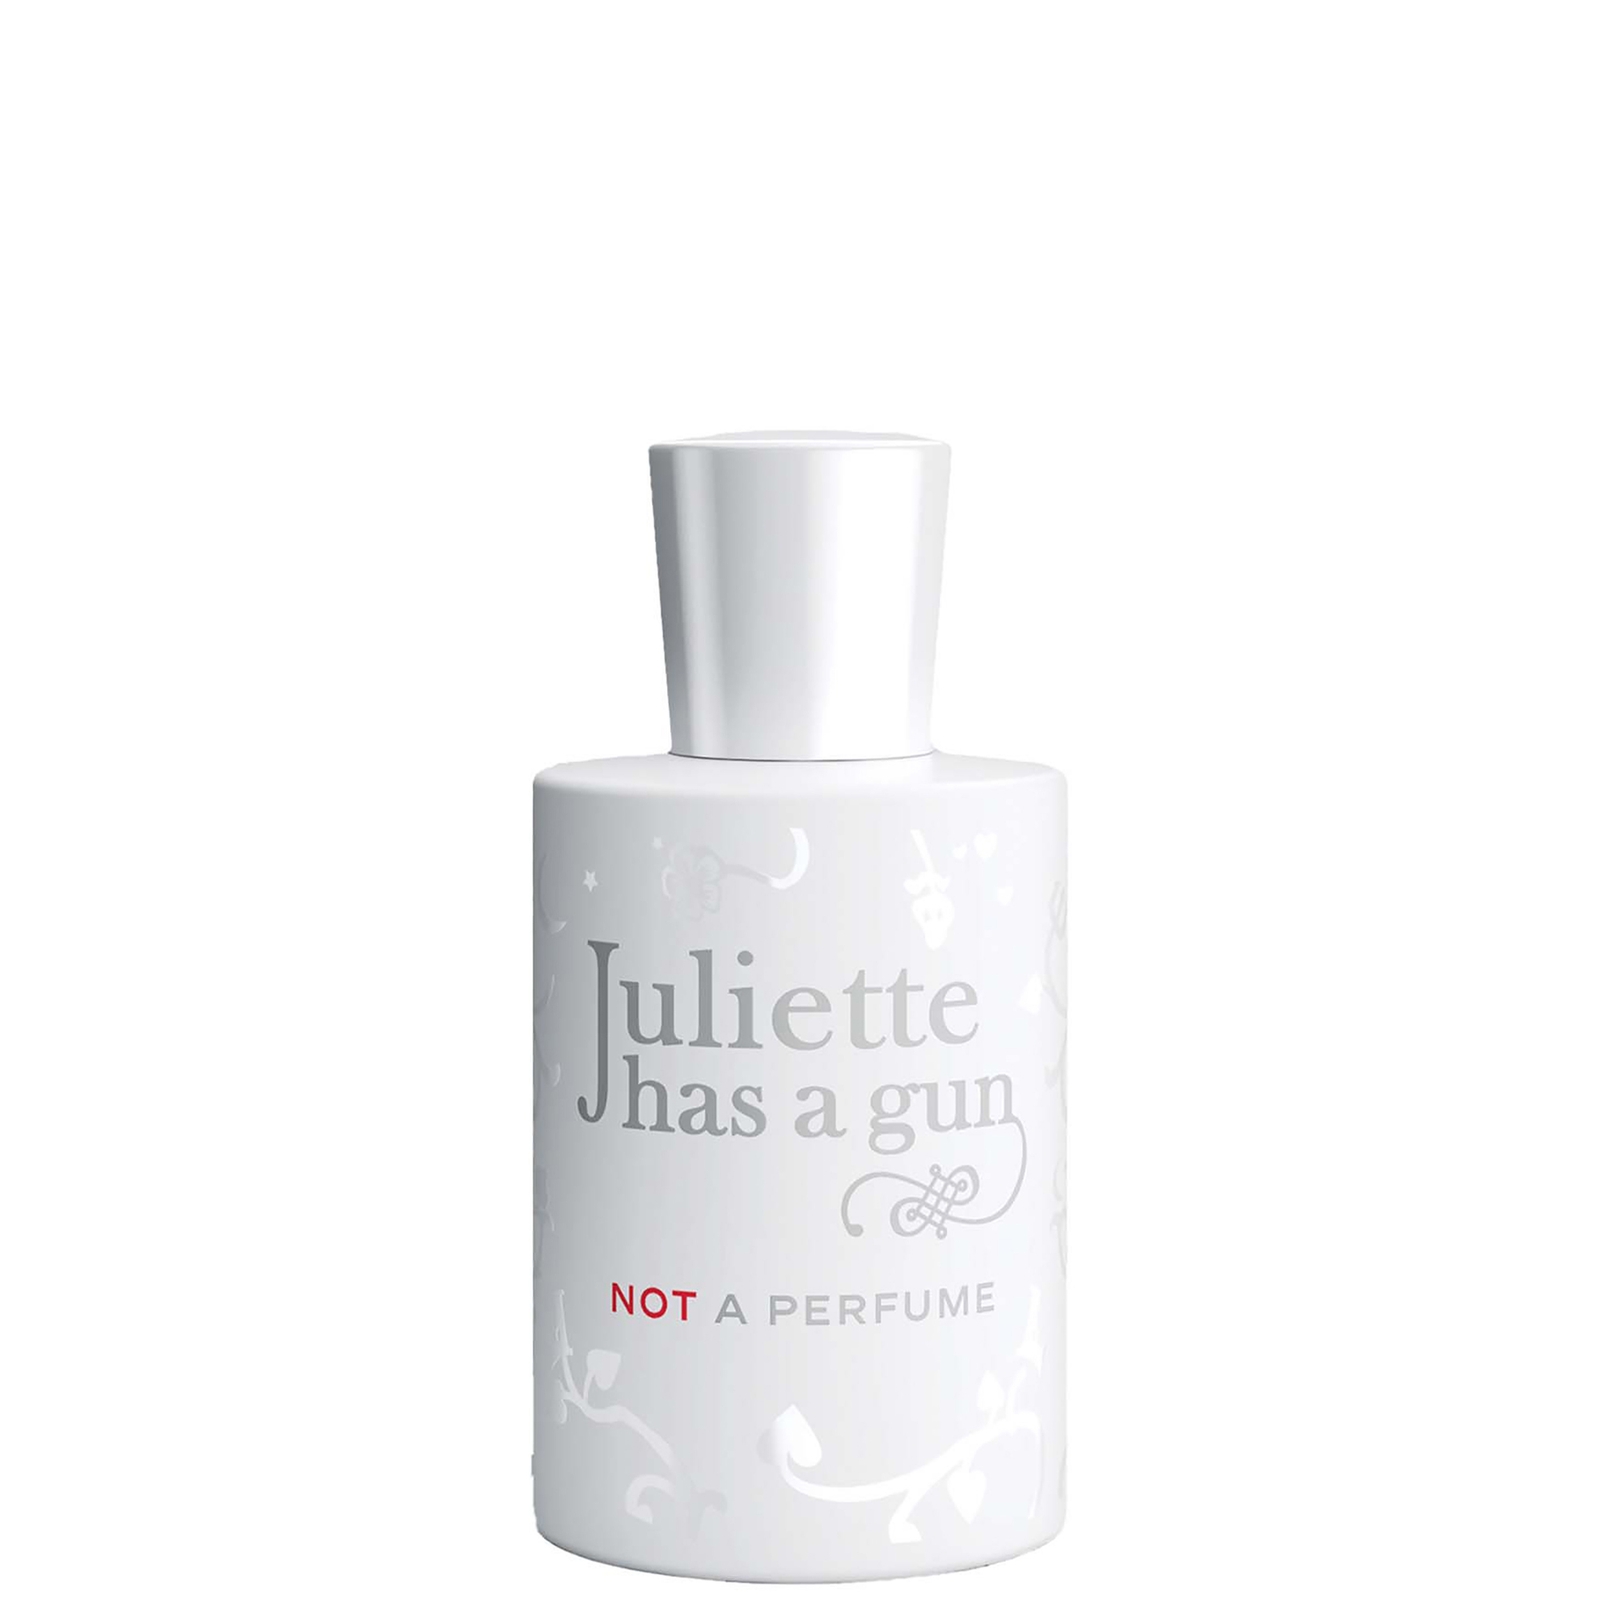 Photos - Women's Fragrance Juliette Has a Gun Not a Perfume Eau de Parfum 50ml JNOT-050 